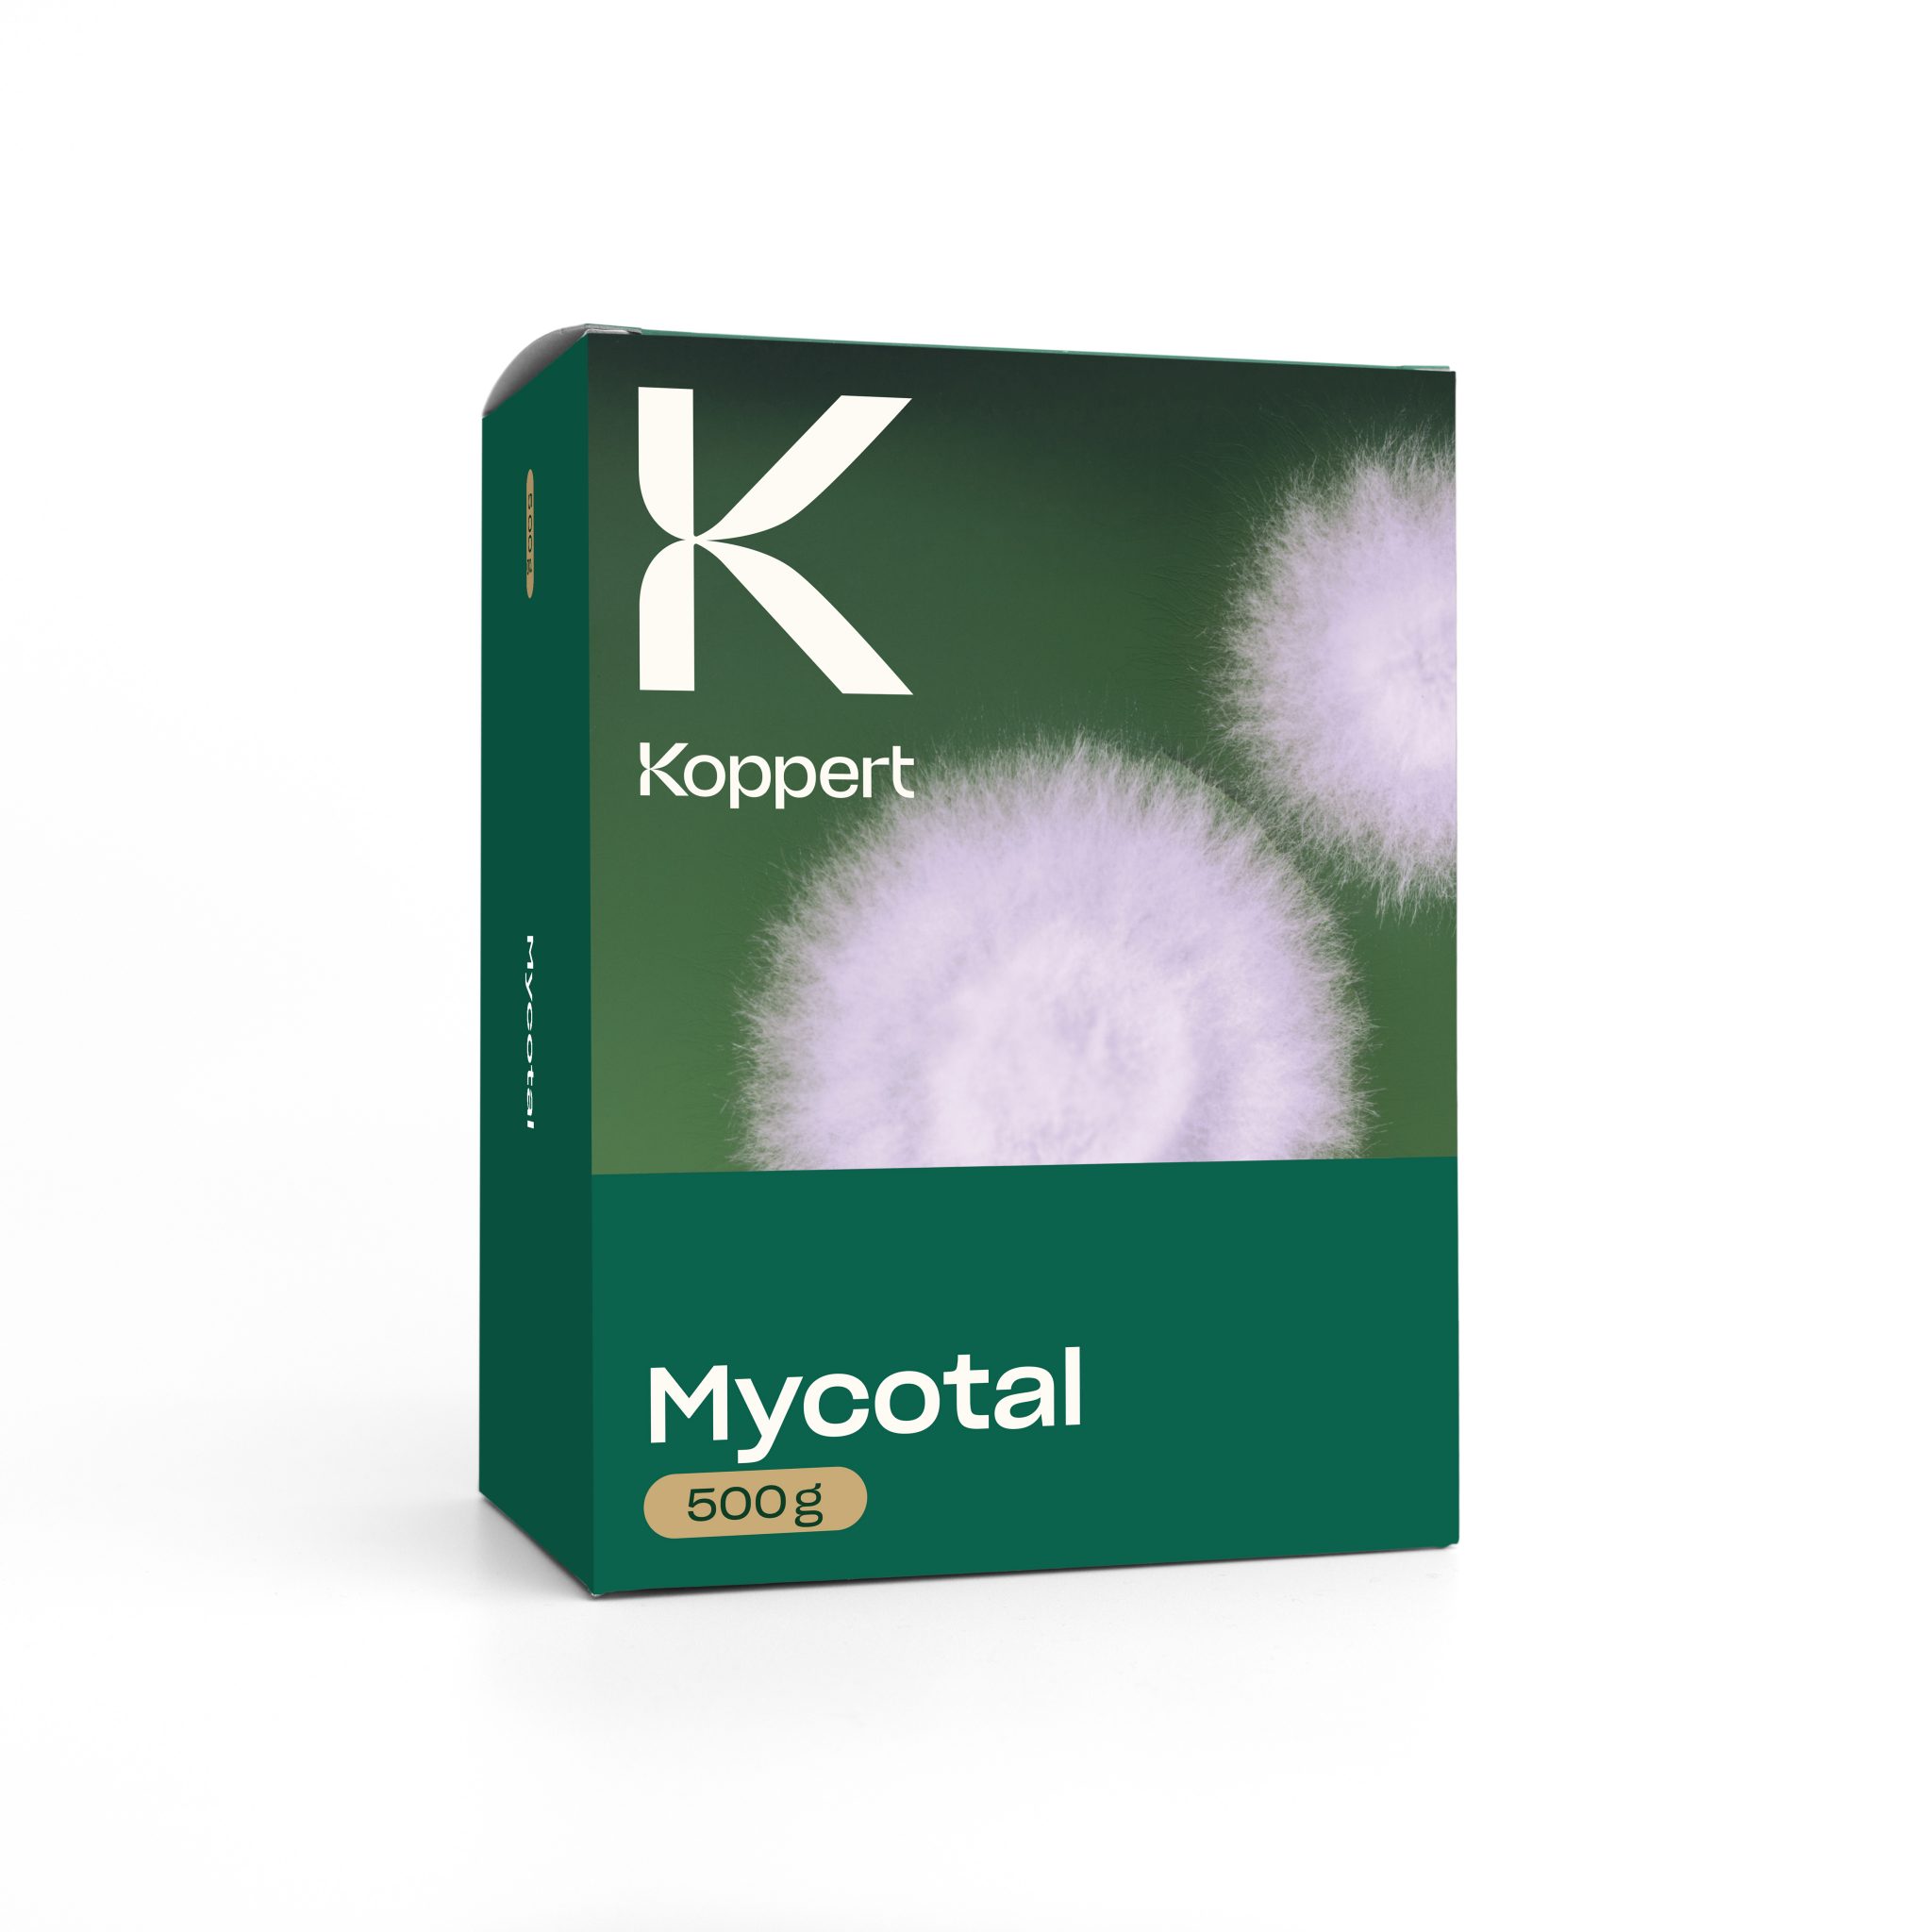 <strong>Koppert apresenta a nova geração do bioinsecticida Mycotal</strong>